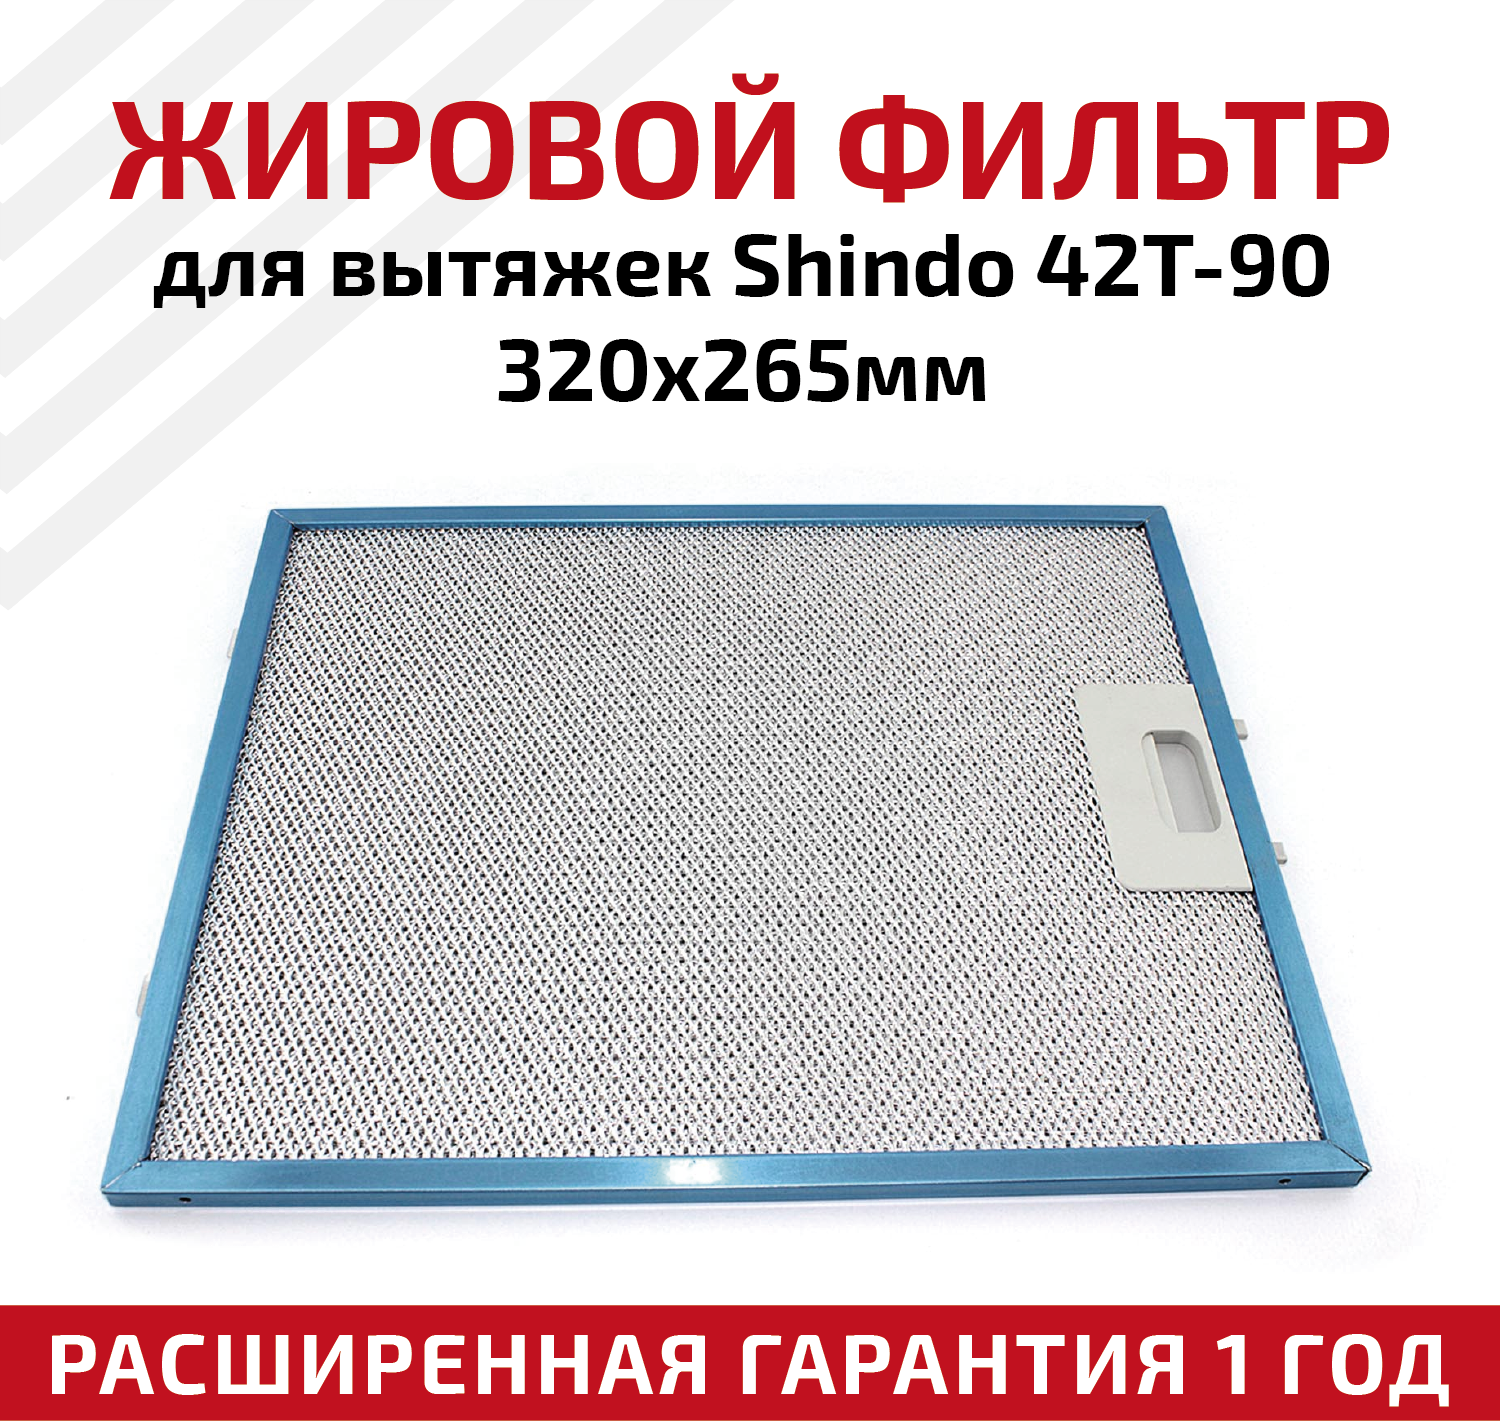 Жировой фильтр (кассета) алюминиевый (металлический) рамочный для кухонных вытяжек Shindo 42T-90, многоразовый, 320х265мм